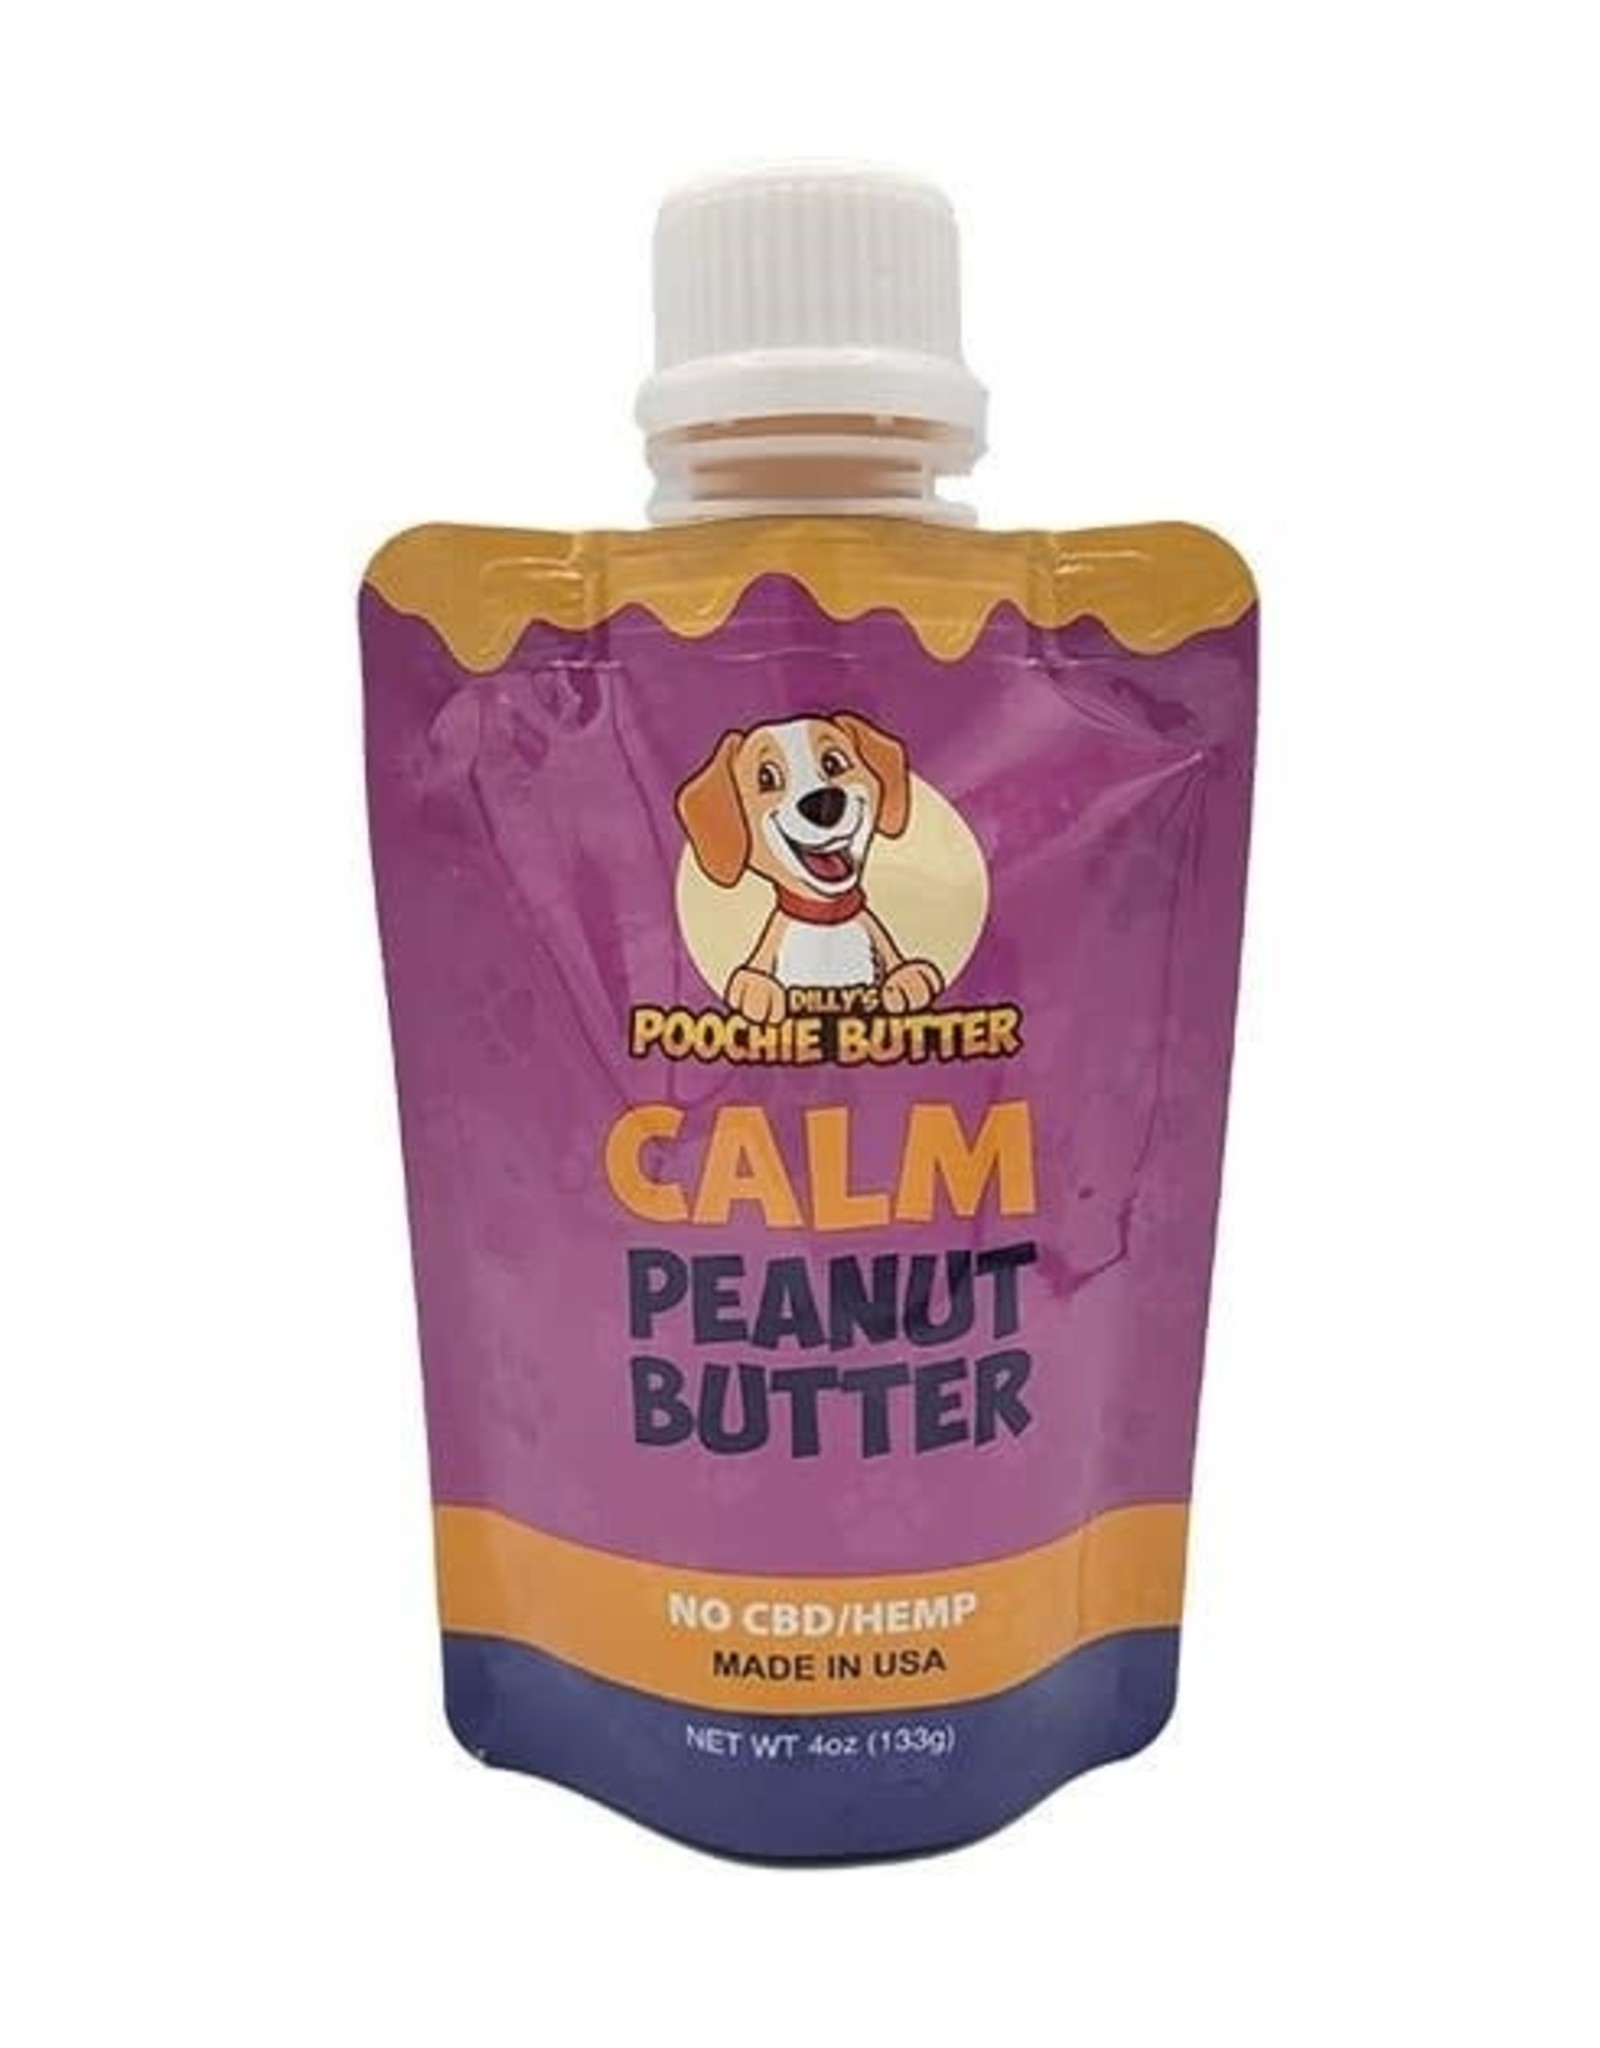 Poochie Butter Calm Peanut Butter